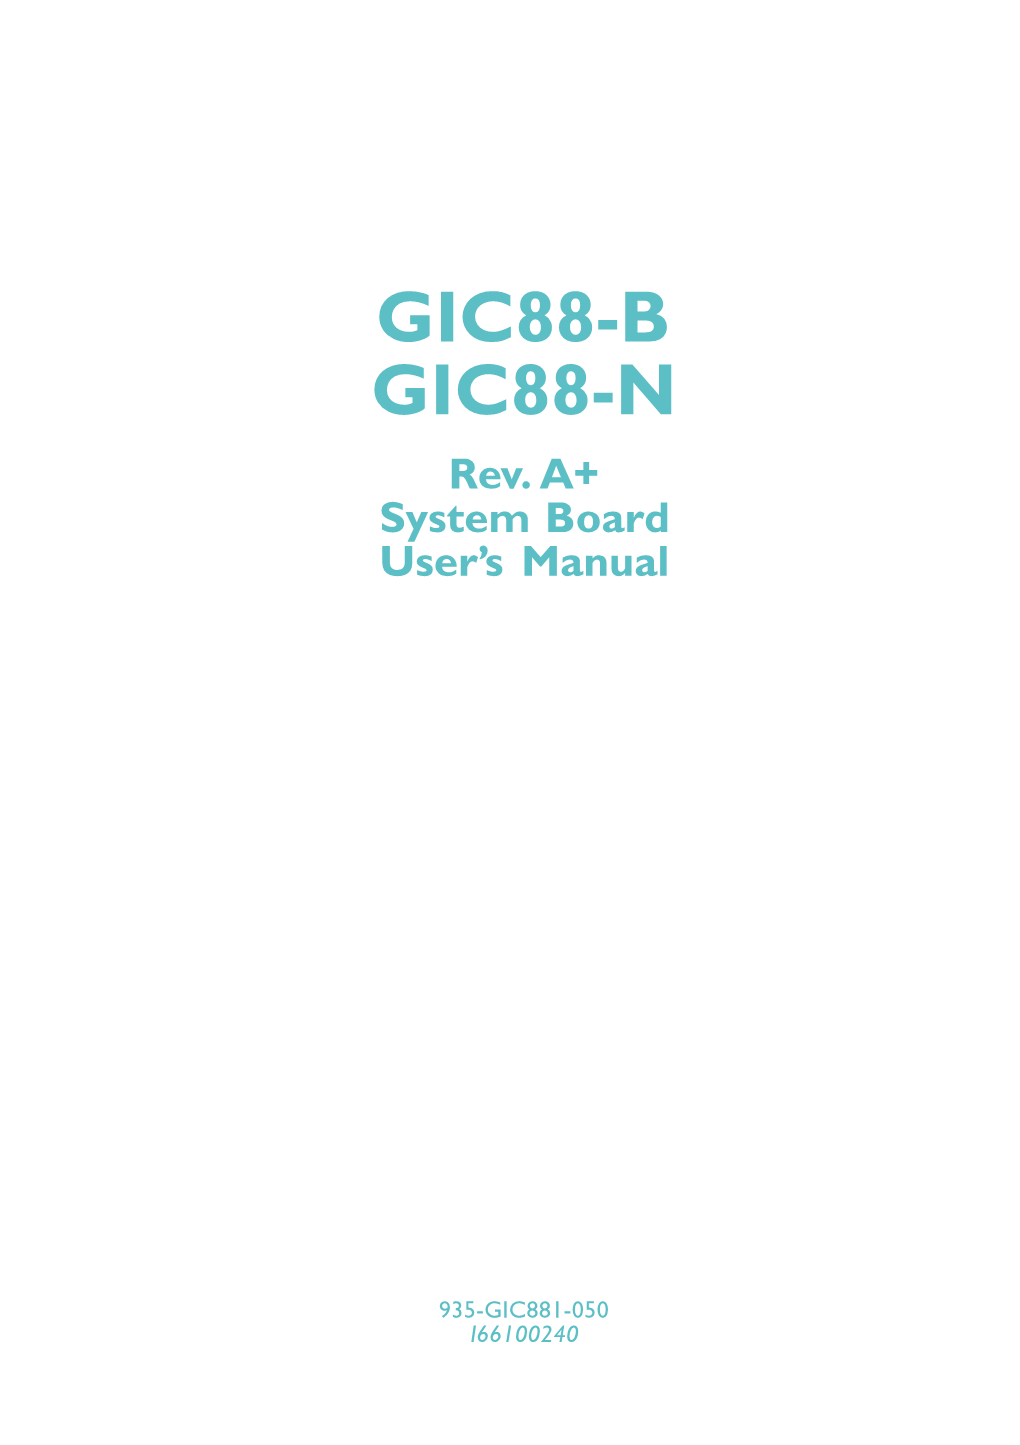 GIC88-B GIC88-N Rev